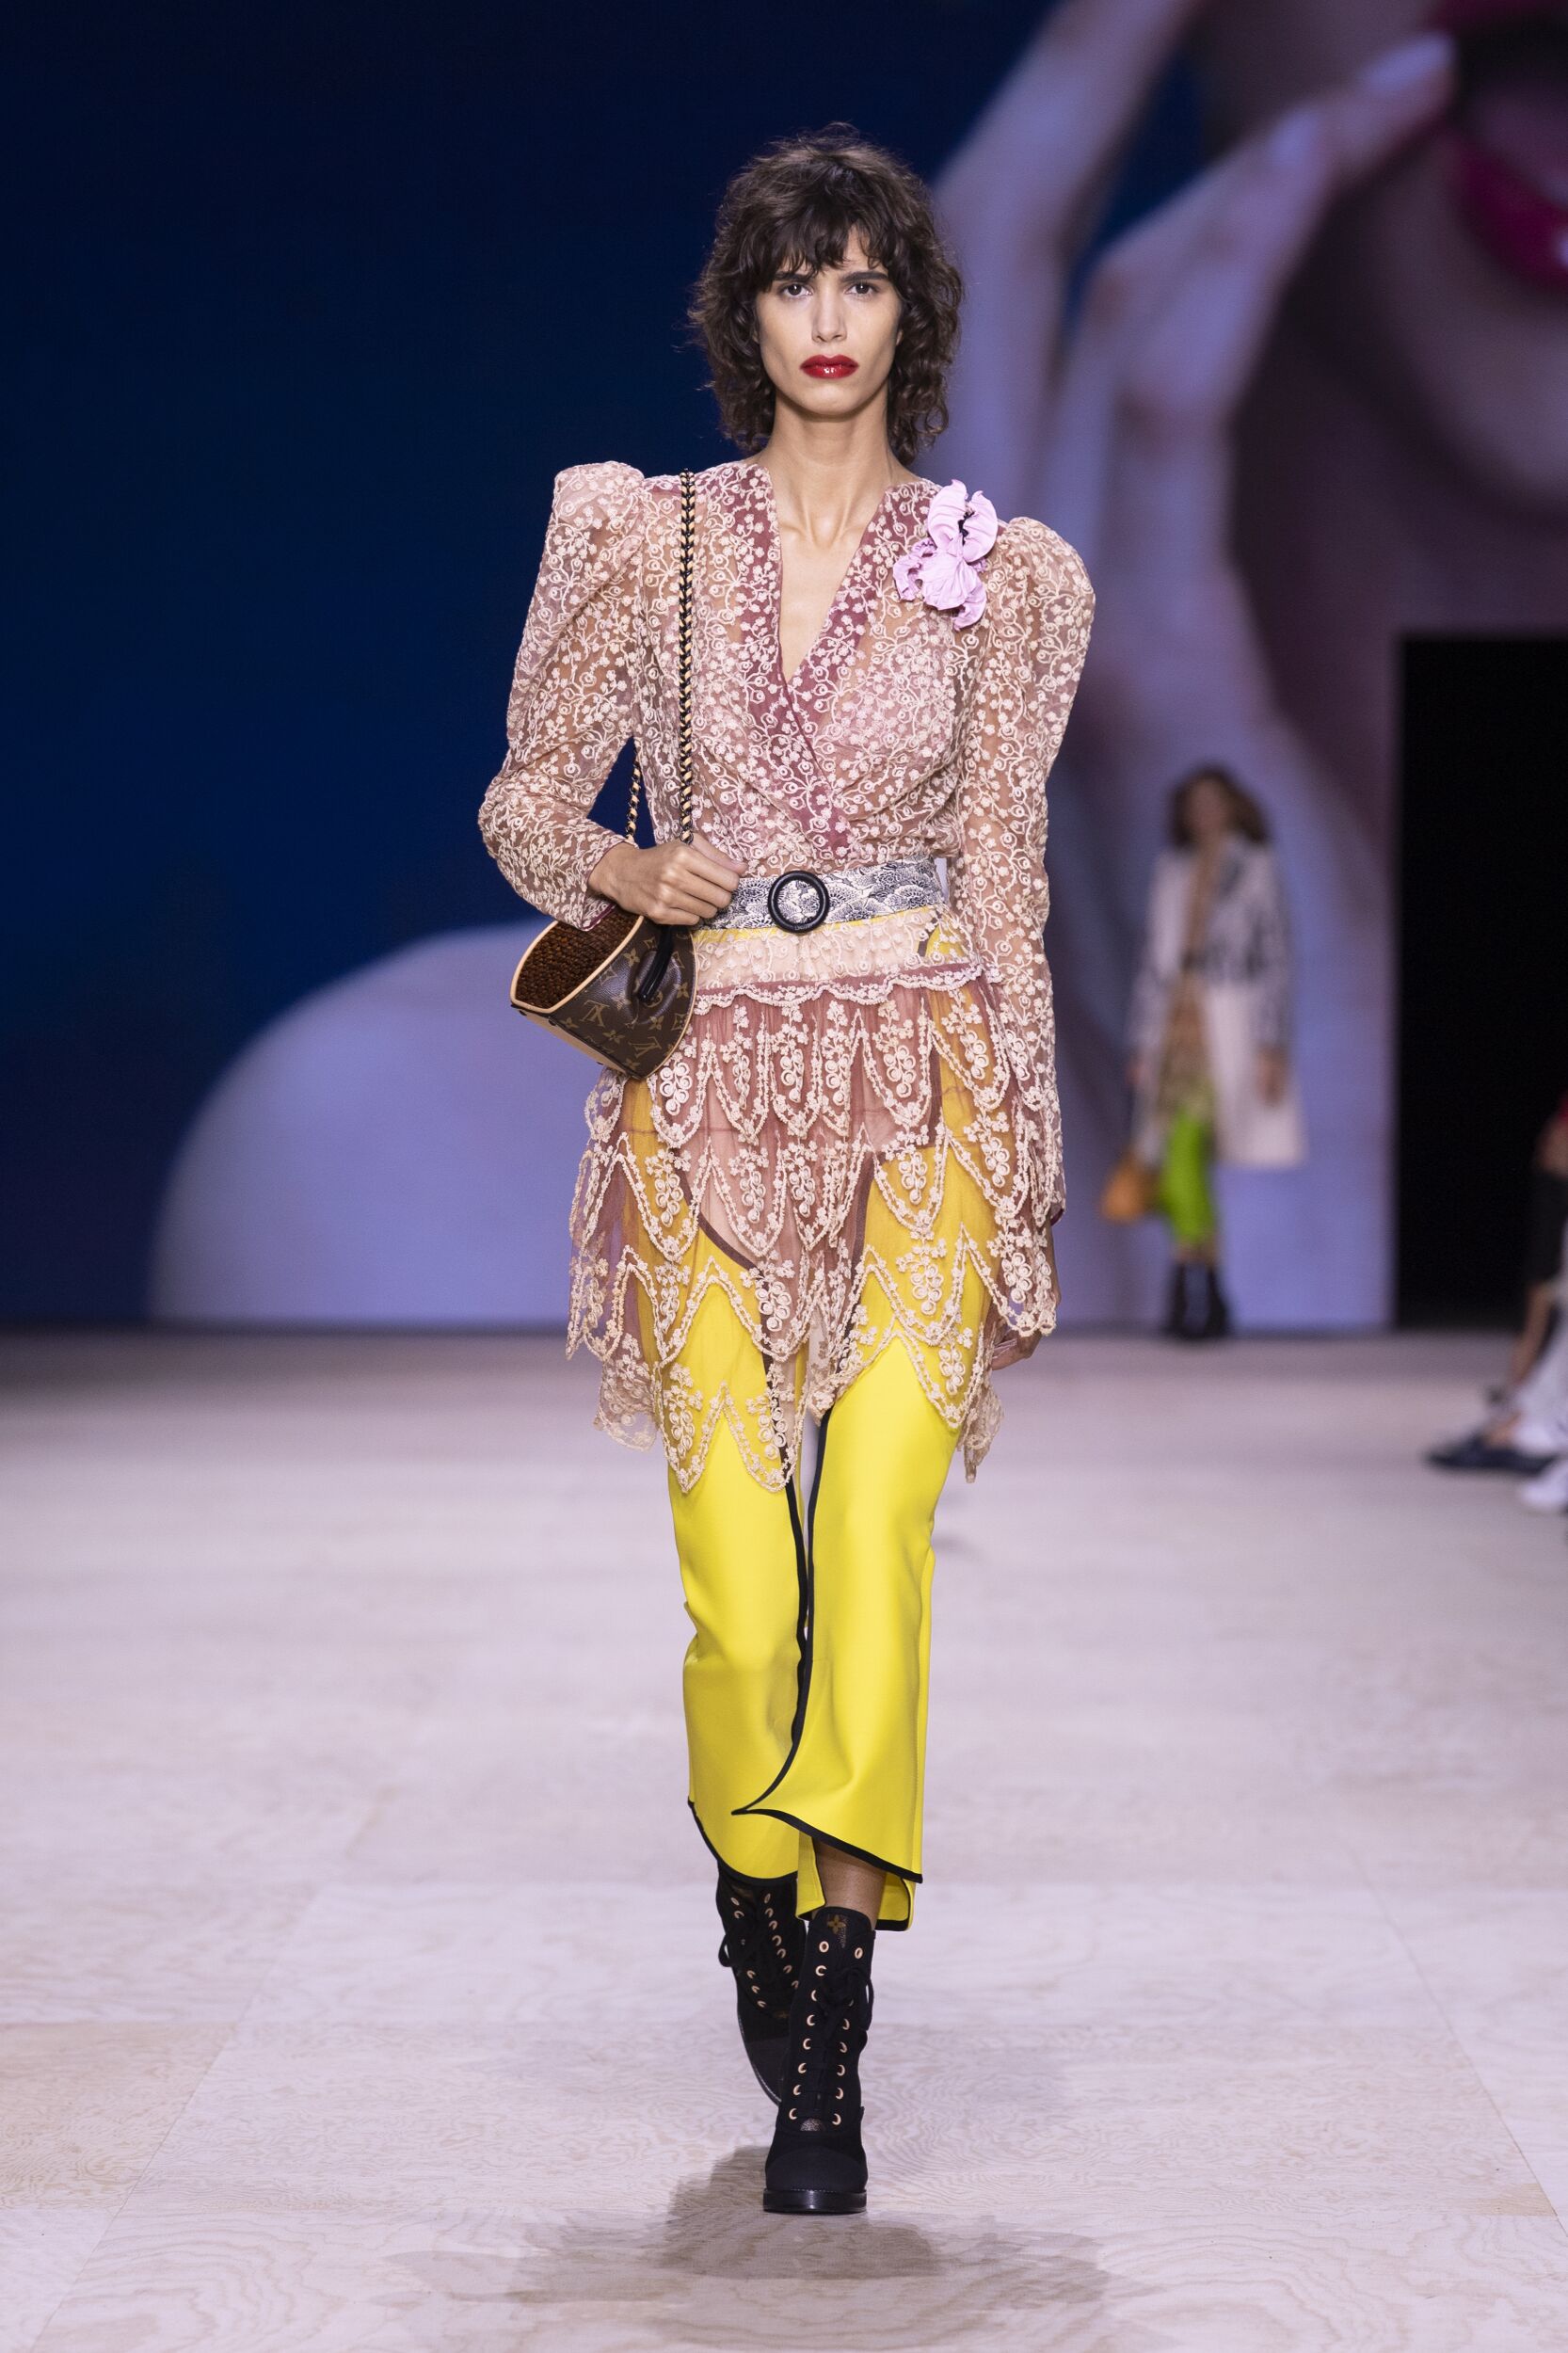 Louis Vuitton - Louis Vuitton Spring-Summer 2020 Fashion Show The